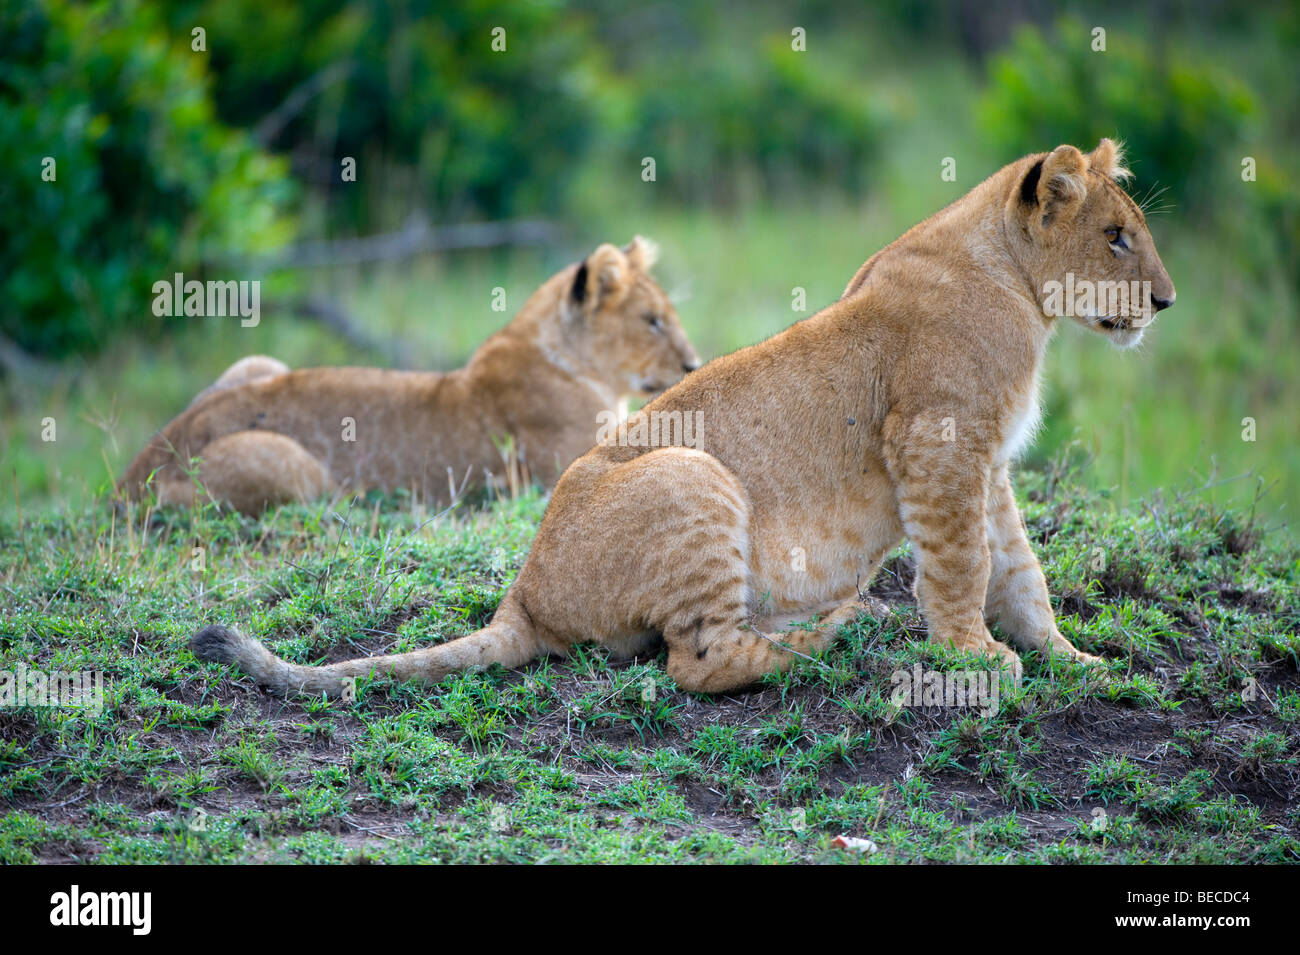 Lions (Panthera leo), cubs, Masai Mara National Reserve, Kenya, East Africa Stock Photo